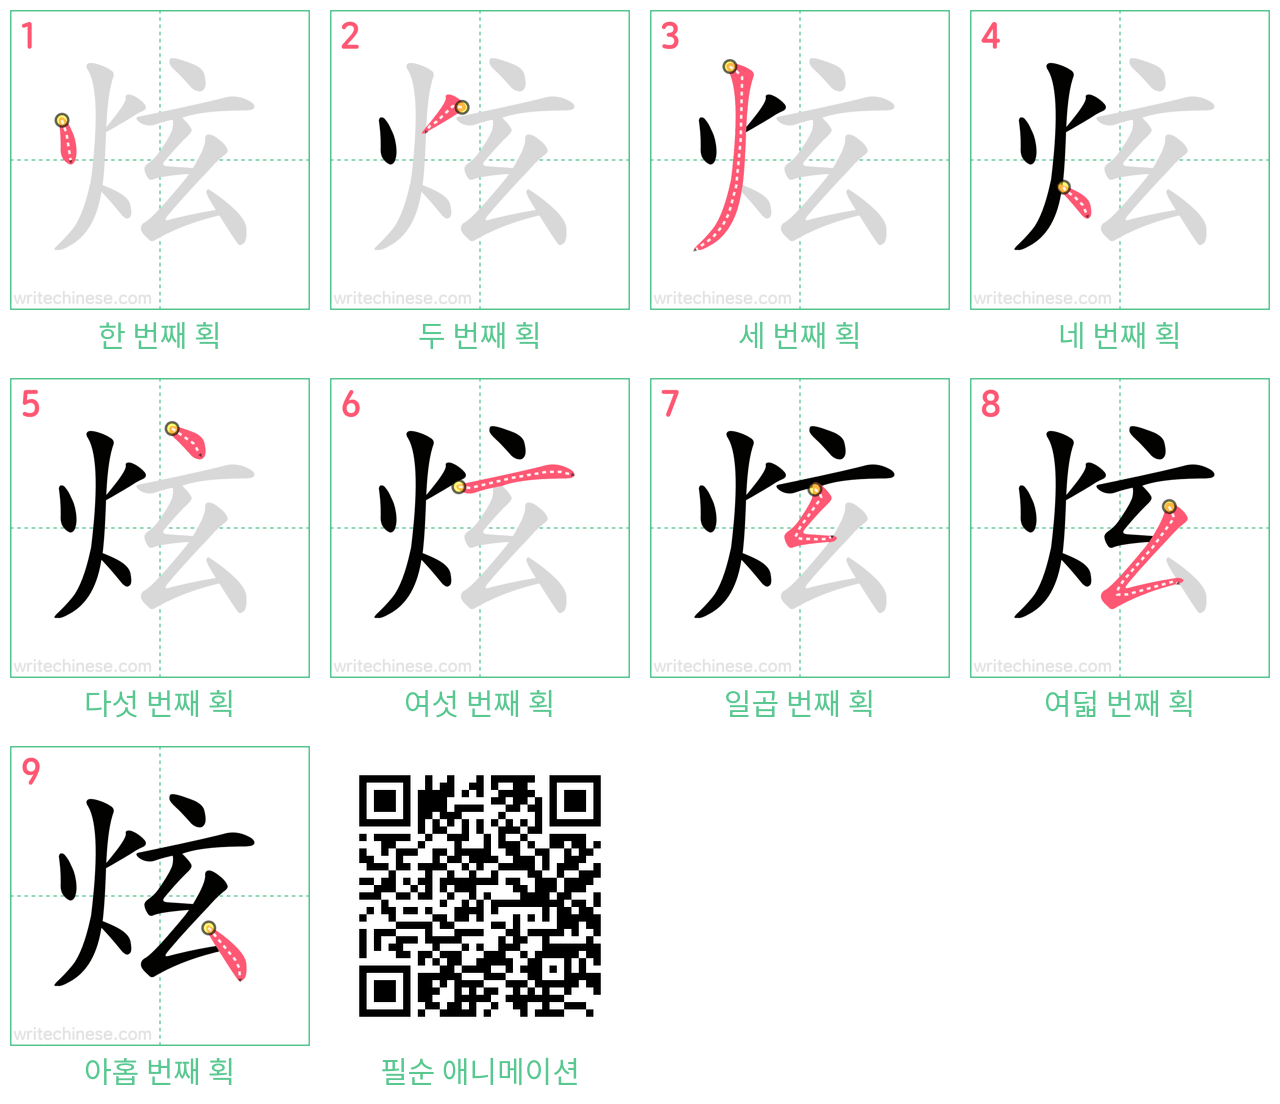 炫 step-by-step stroke order diagrams